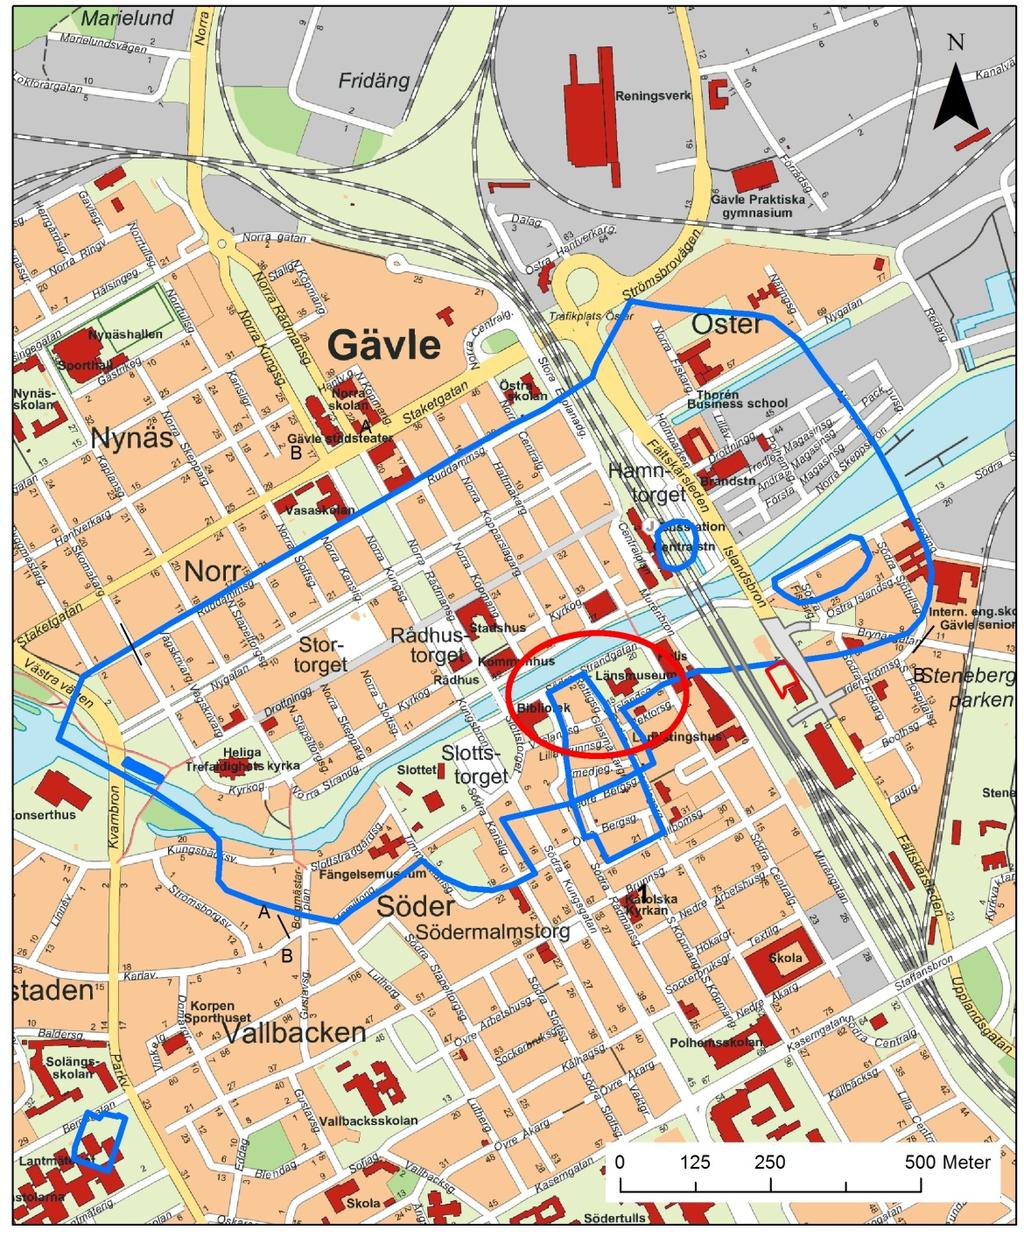 Bild 1. Översiktskarta över centrala Gävle med aktuellt område inringat med röd ring.